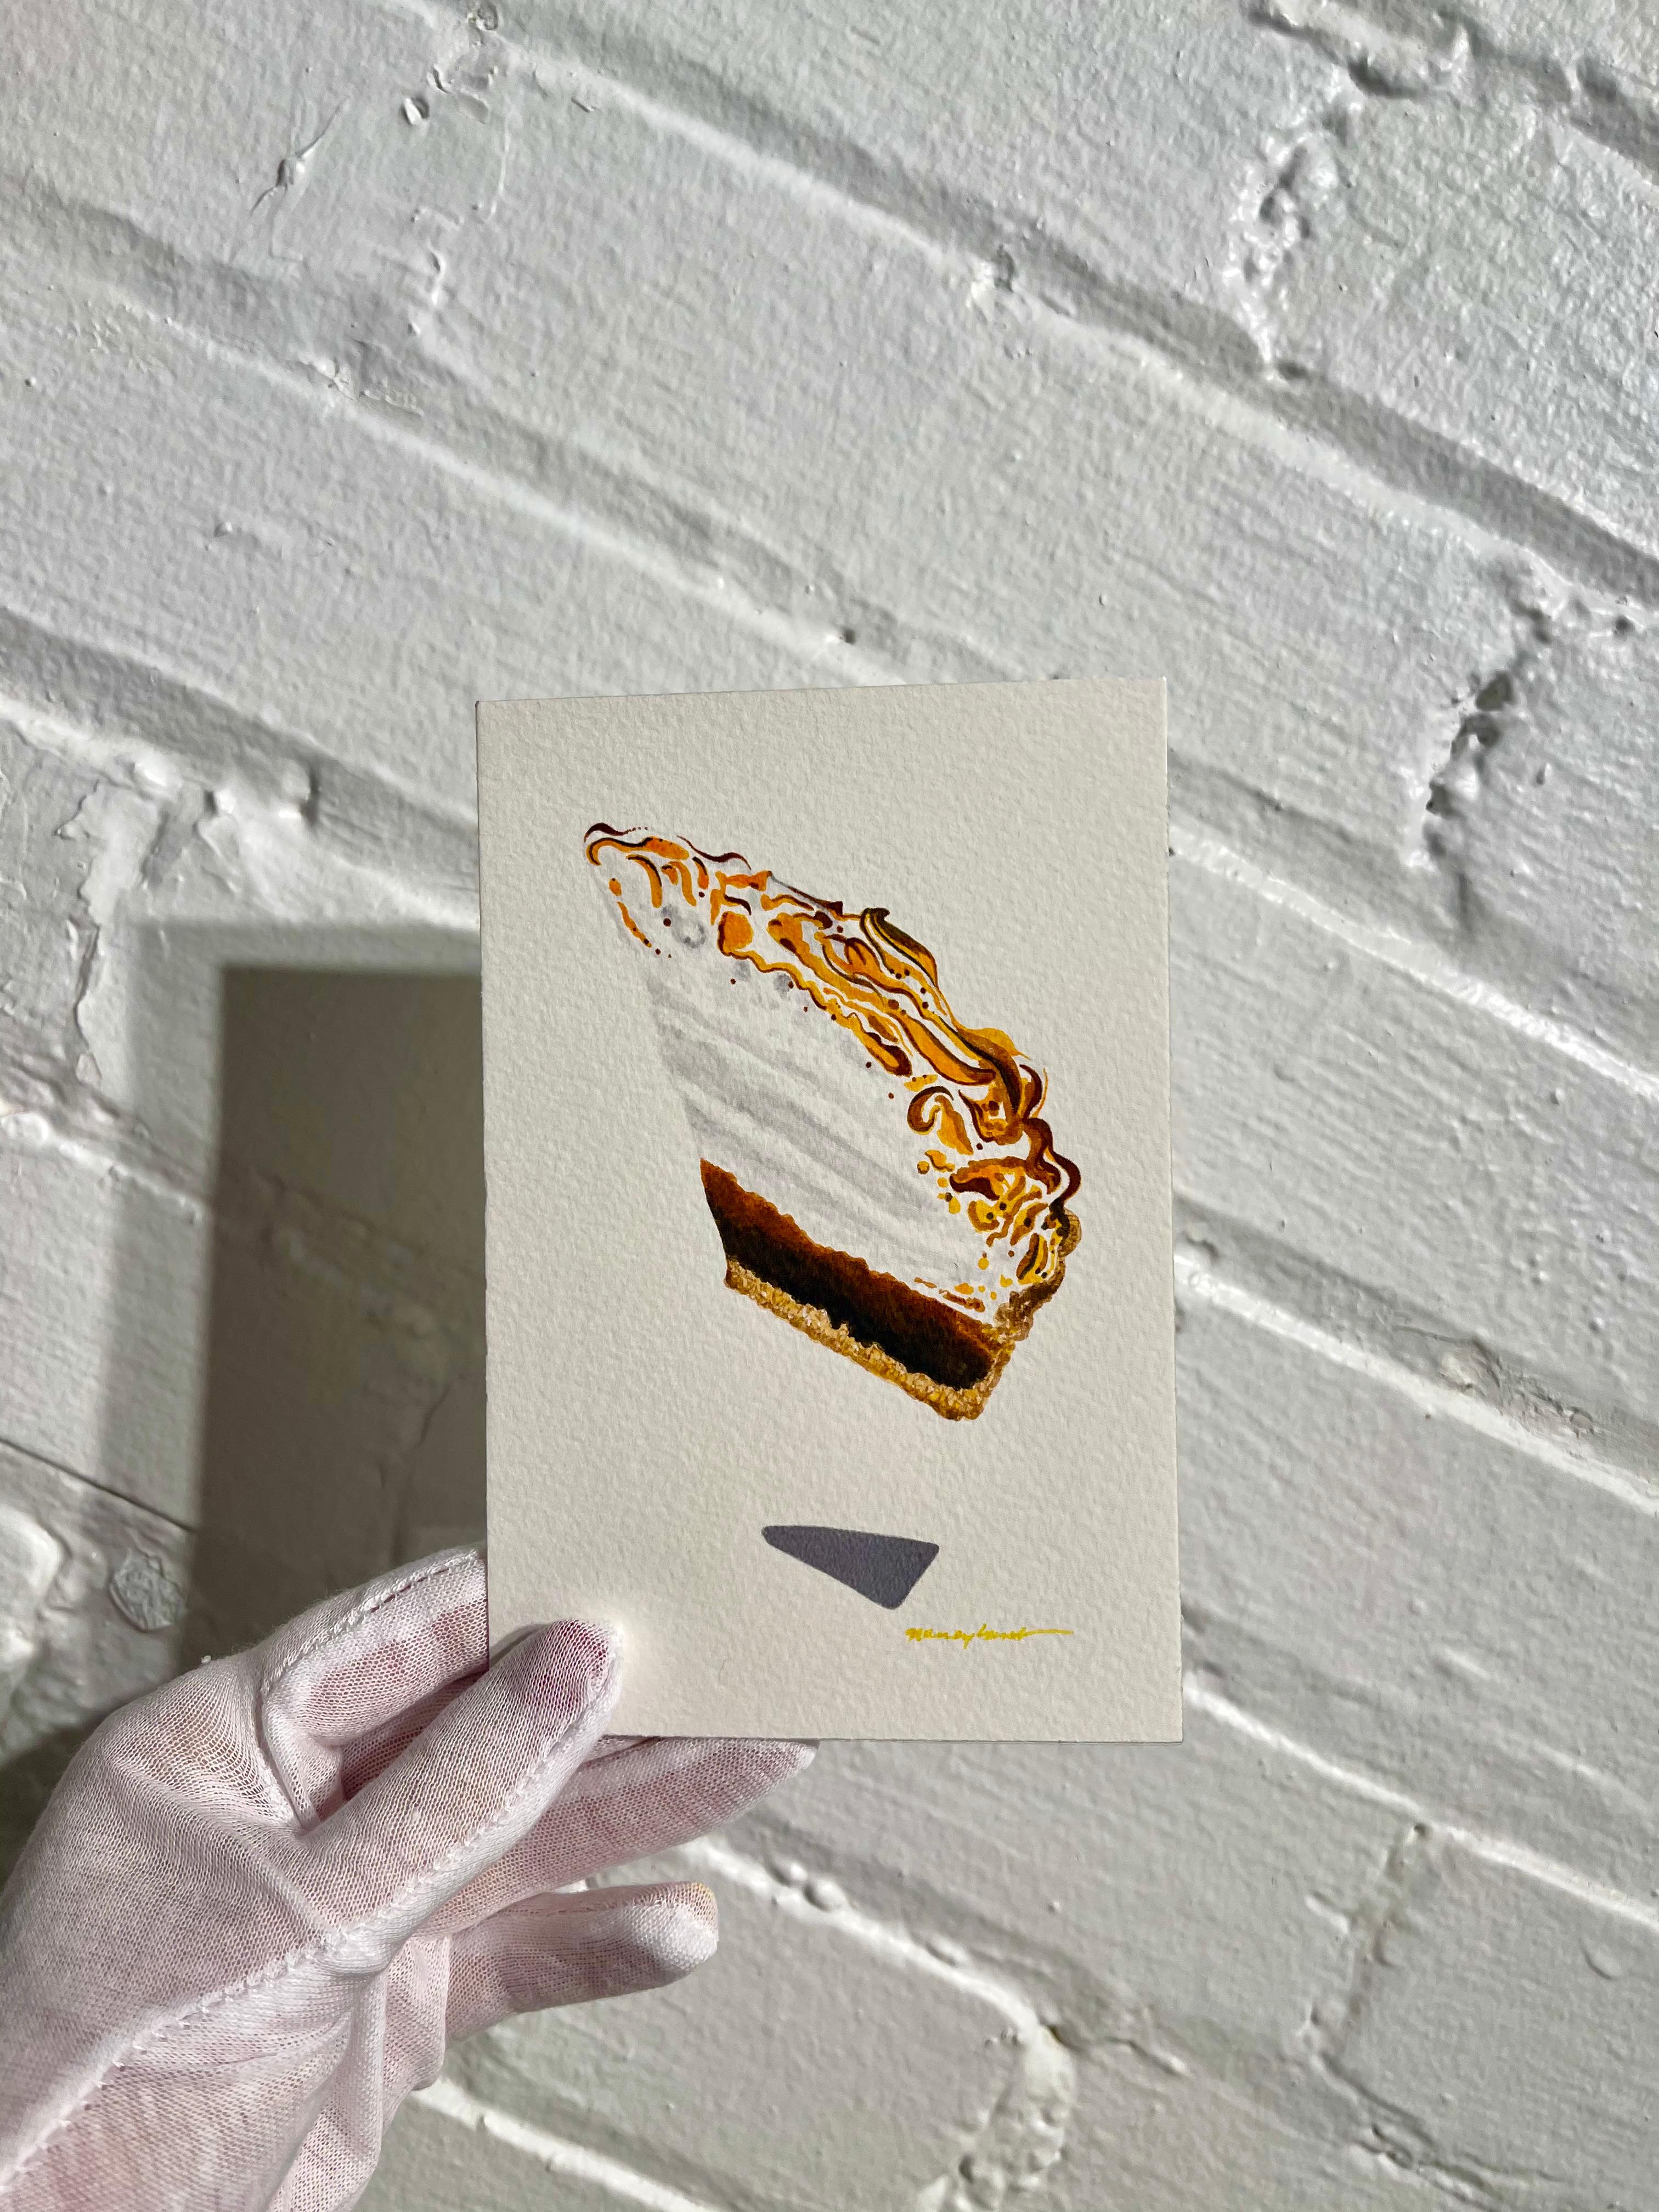 Petite pièce à dessert contemporaine à l'aquarelle en forme de chocolat idéale pour la cuisine, le bar et le bar  - Réalisme américain Art par Nancy Lamb 